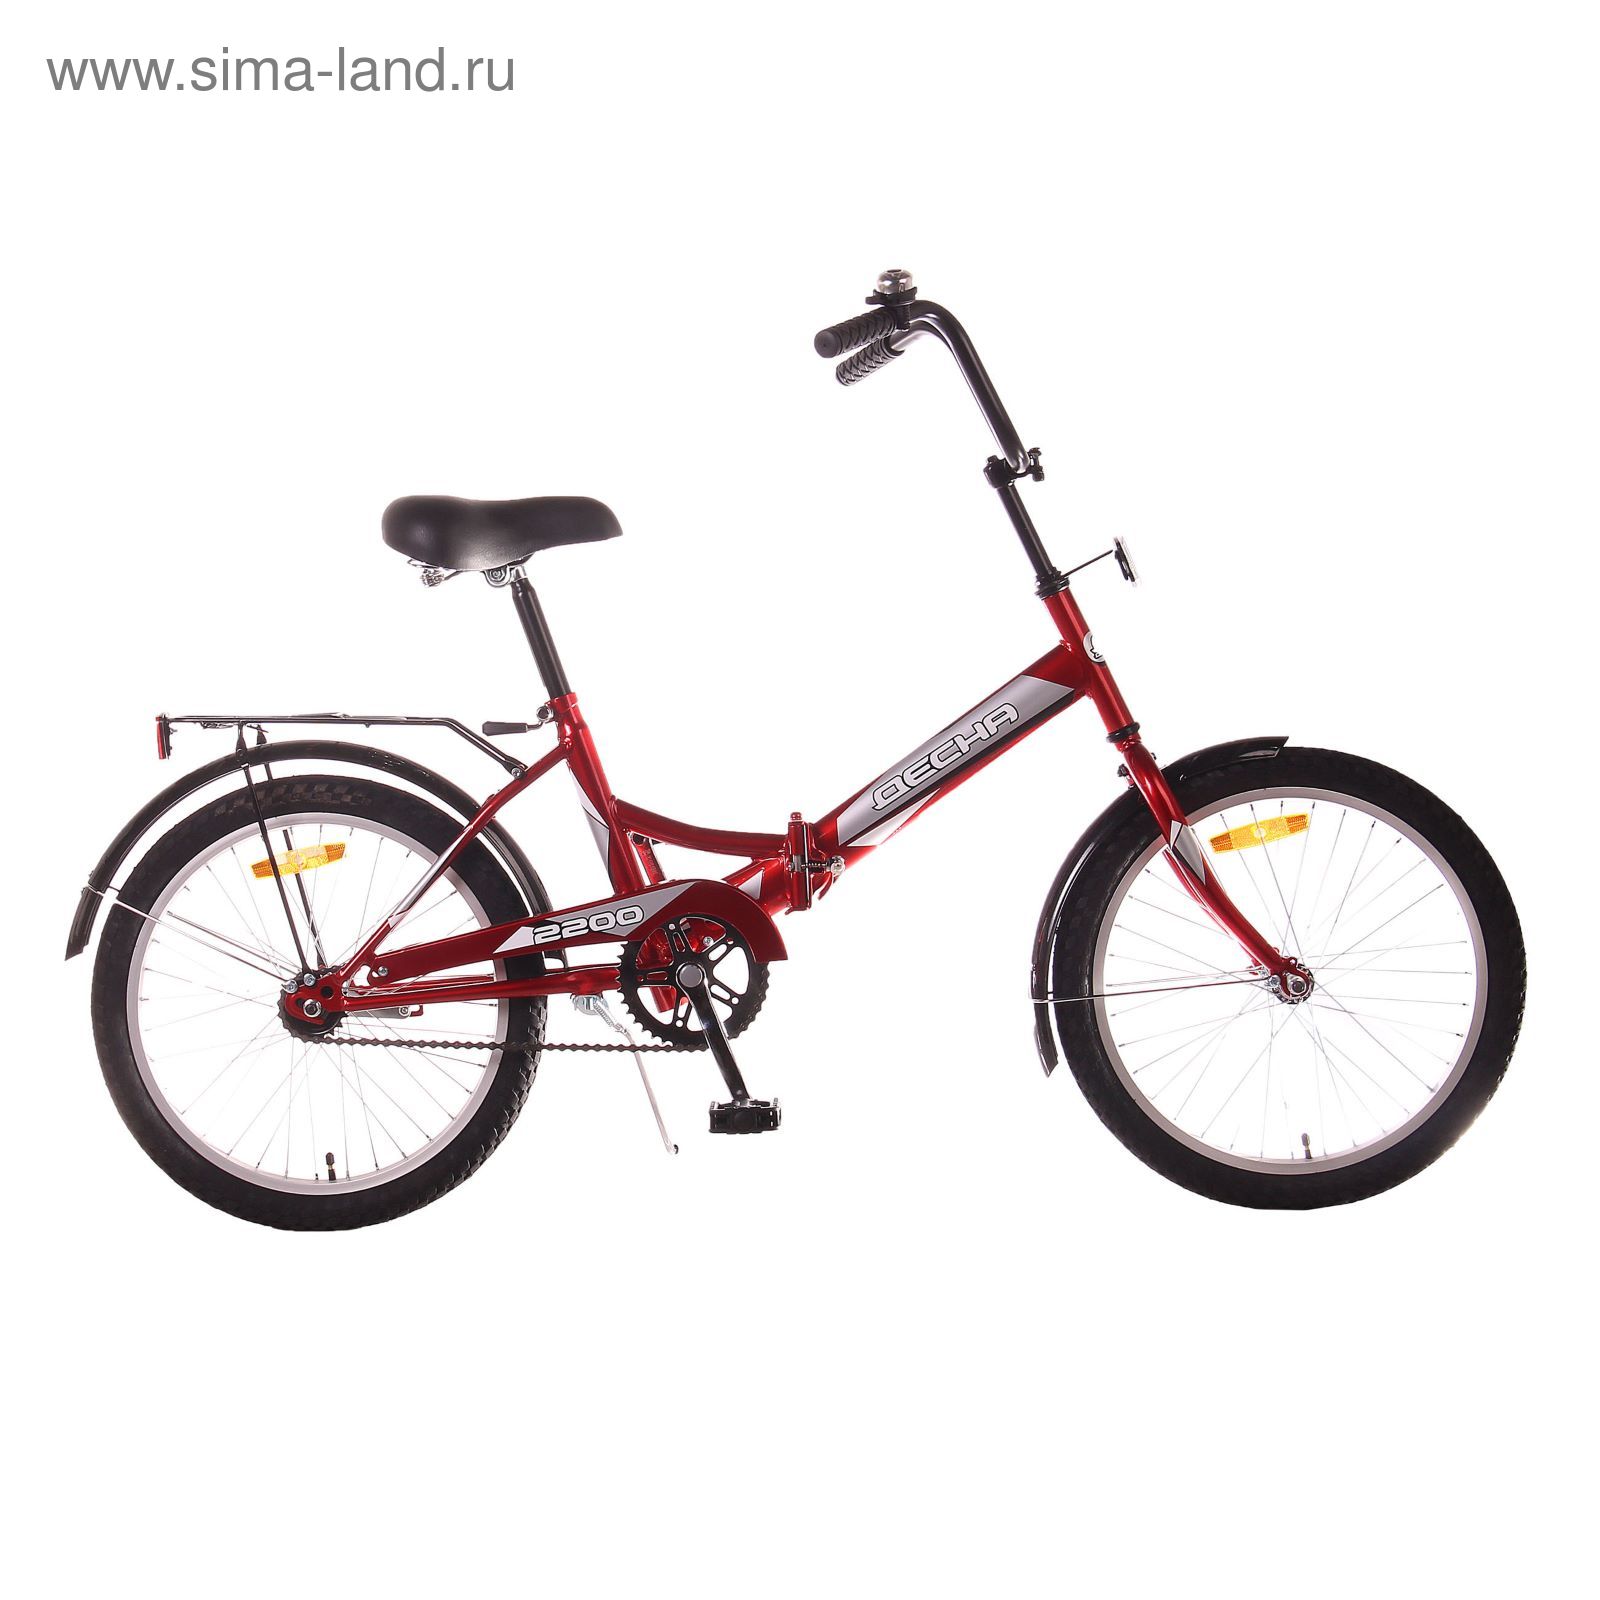 Велосипед 20" Десна-2200 Z010, 2017, цвет красный, размер 13"